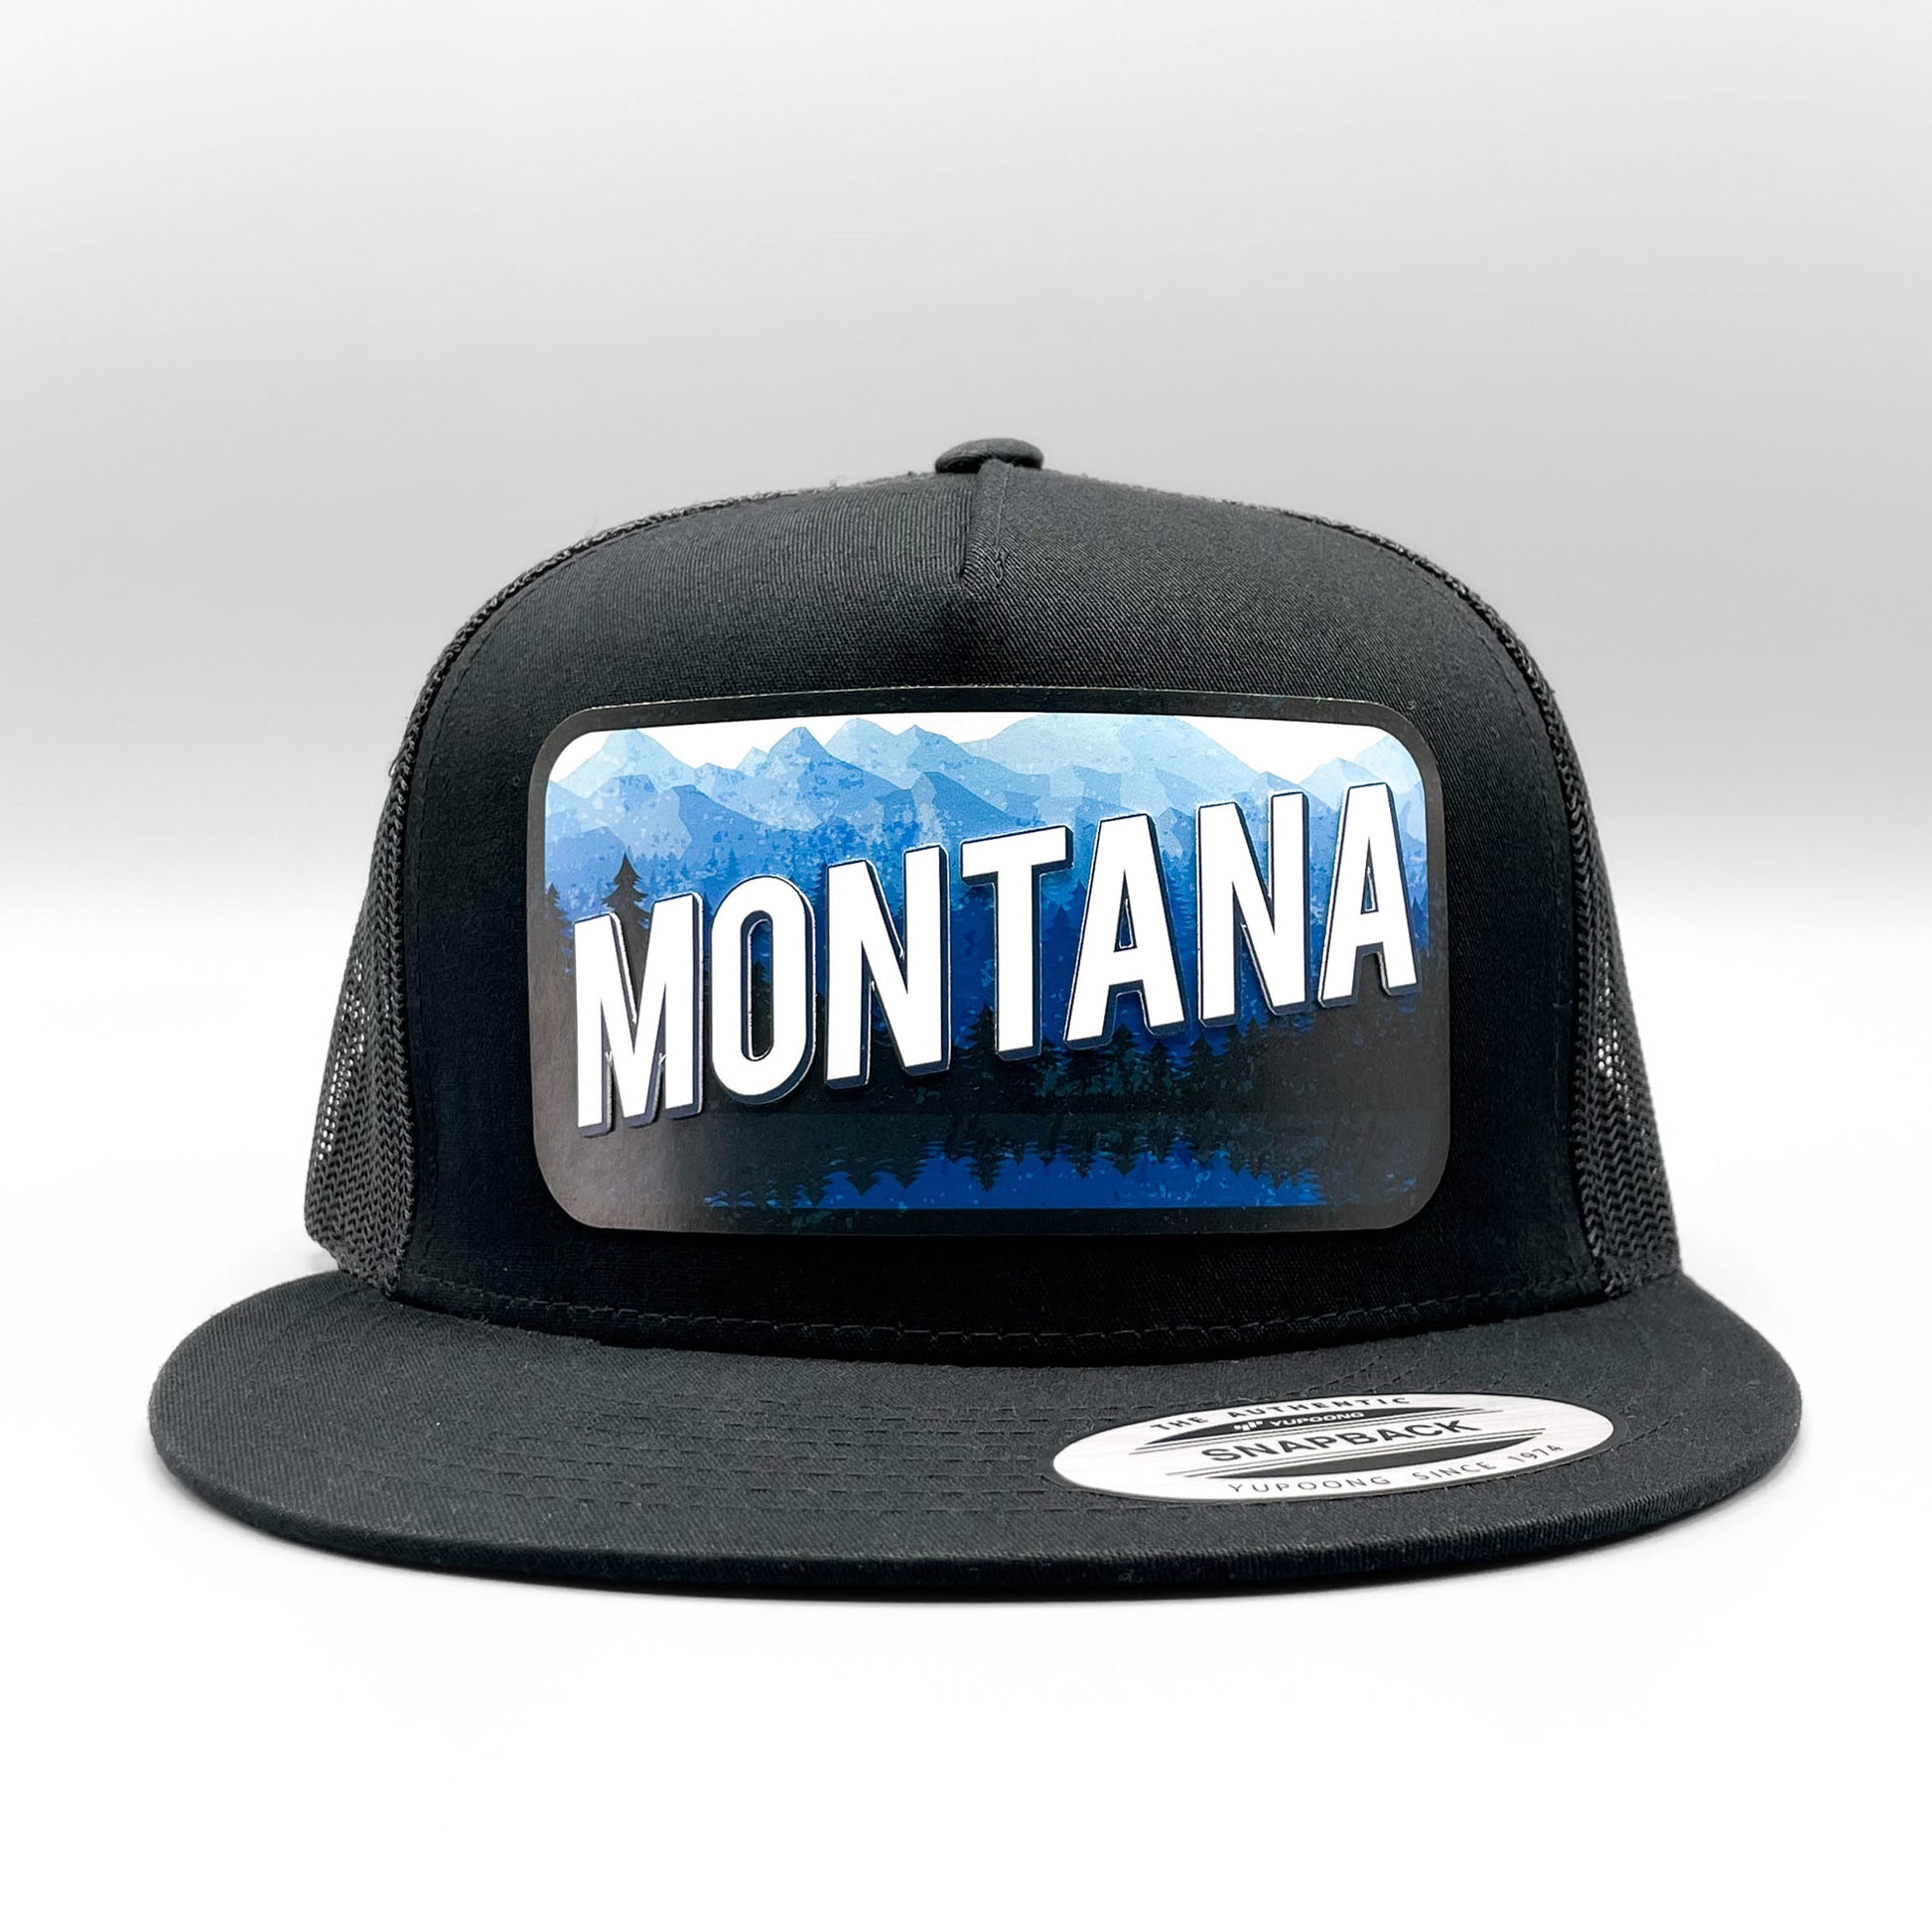 Montana Trucker Hat